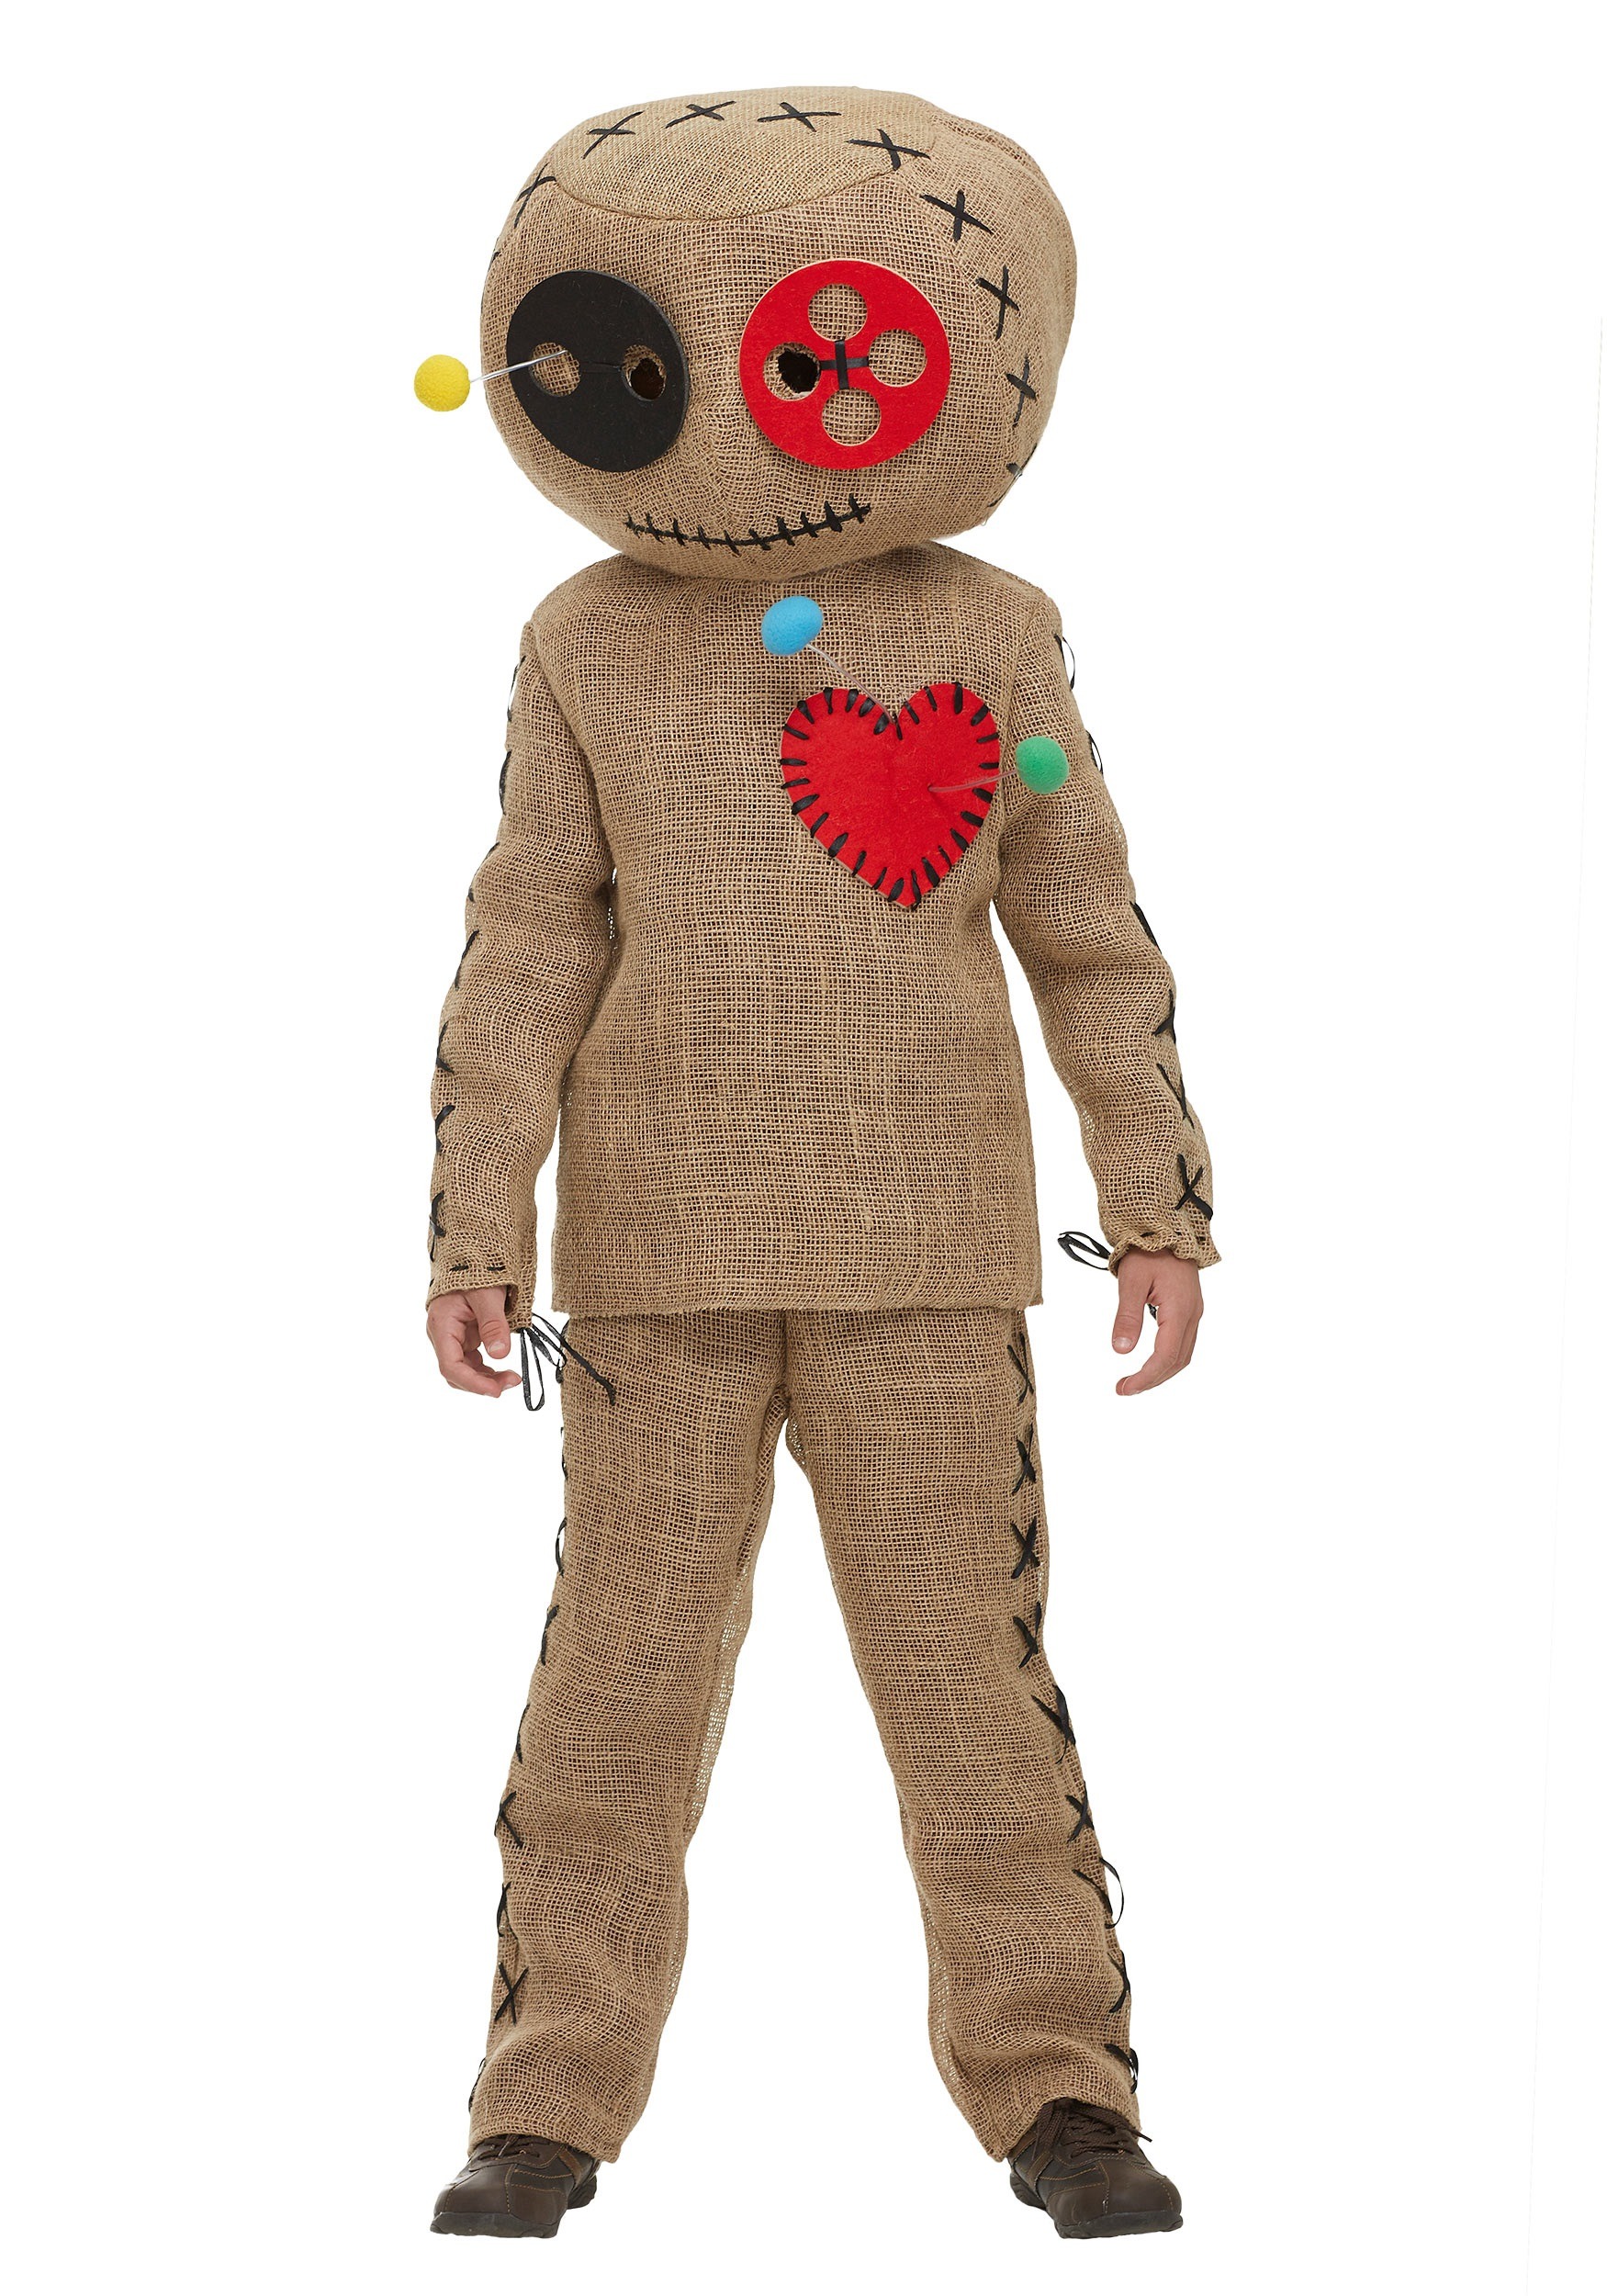 Voodoo Doll Costume Ideas